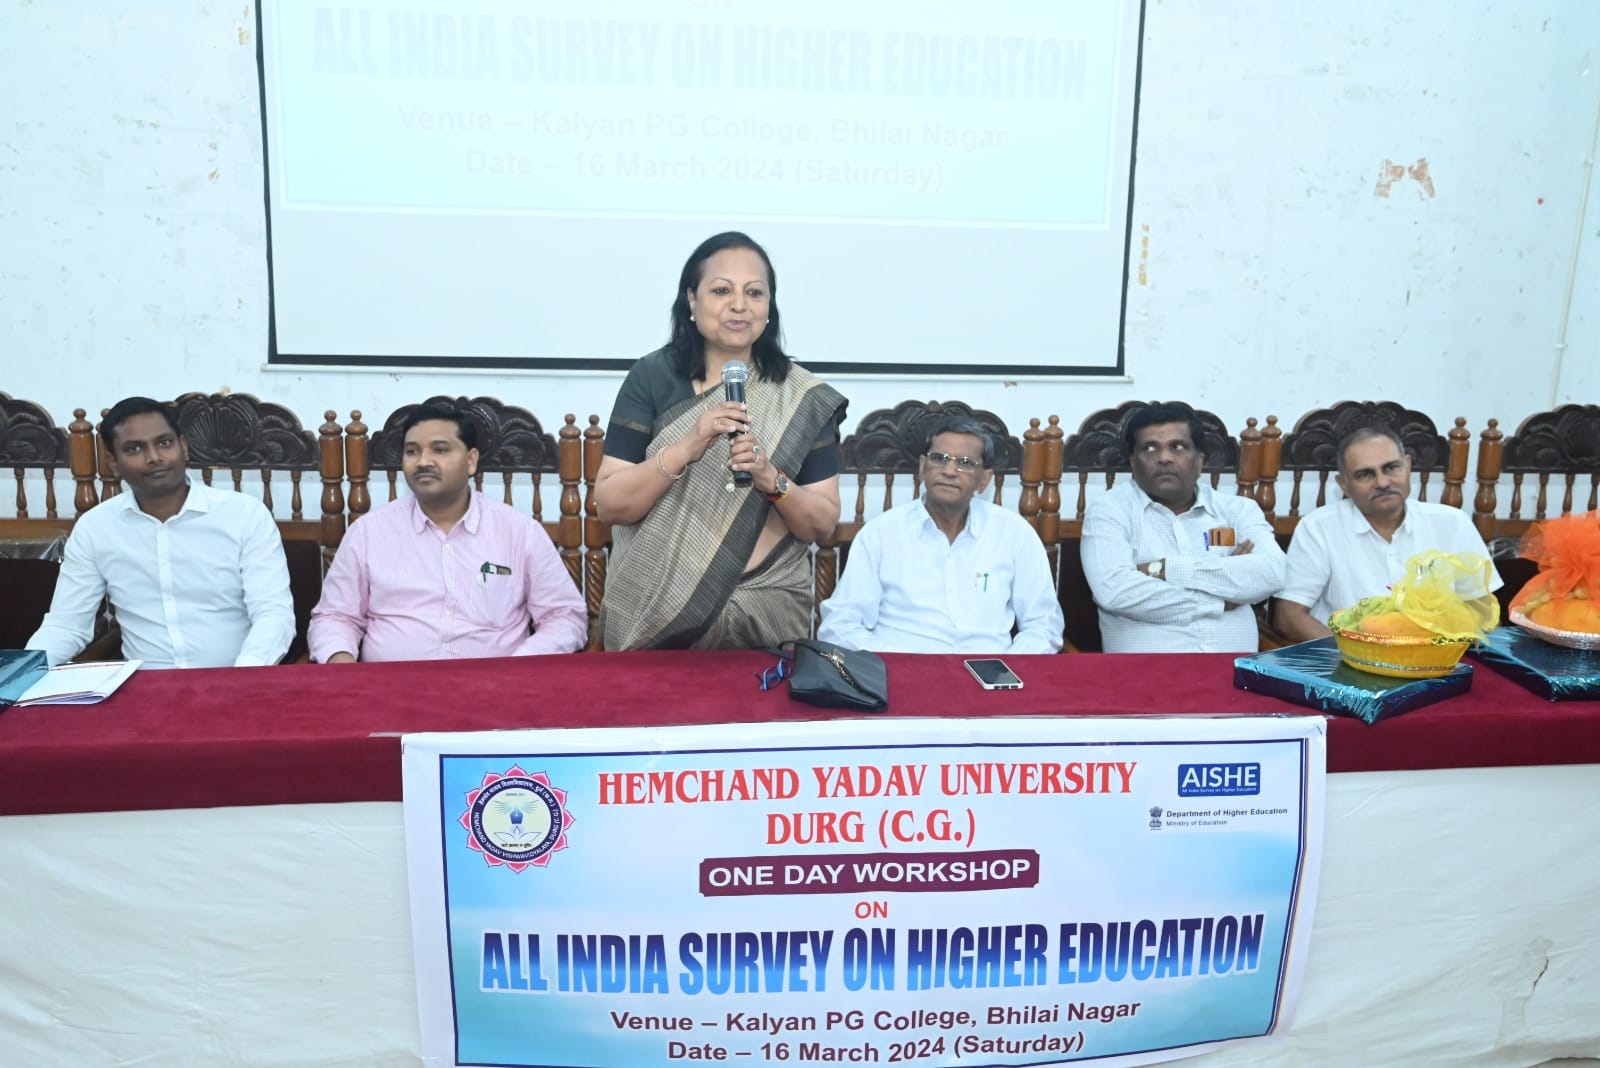 हेमचंद यादव विश्वविद्यालय, दुर्ग द्वारा ऑल इंडिया सर्वे ऑफ हायर एजुकेशन पर केन्द्रित एक दिवसीय कार्यशाला आयोजित